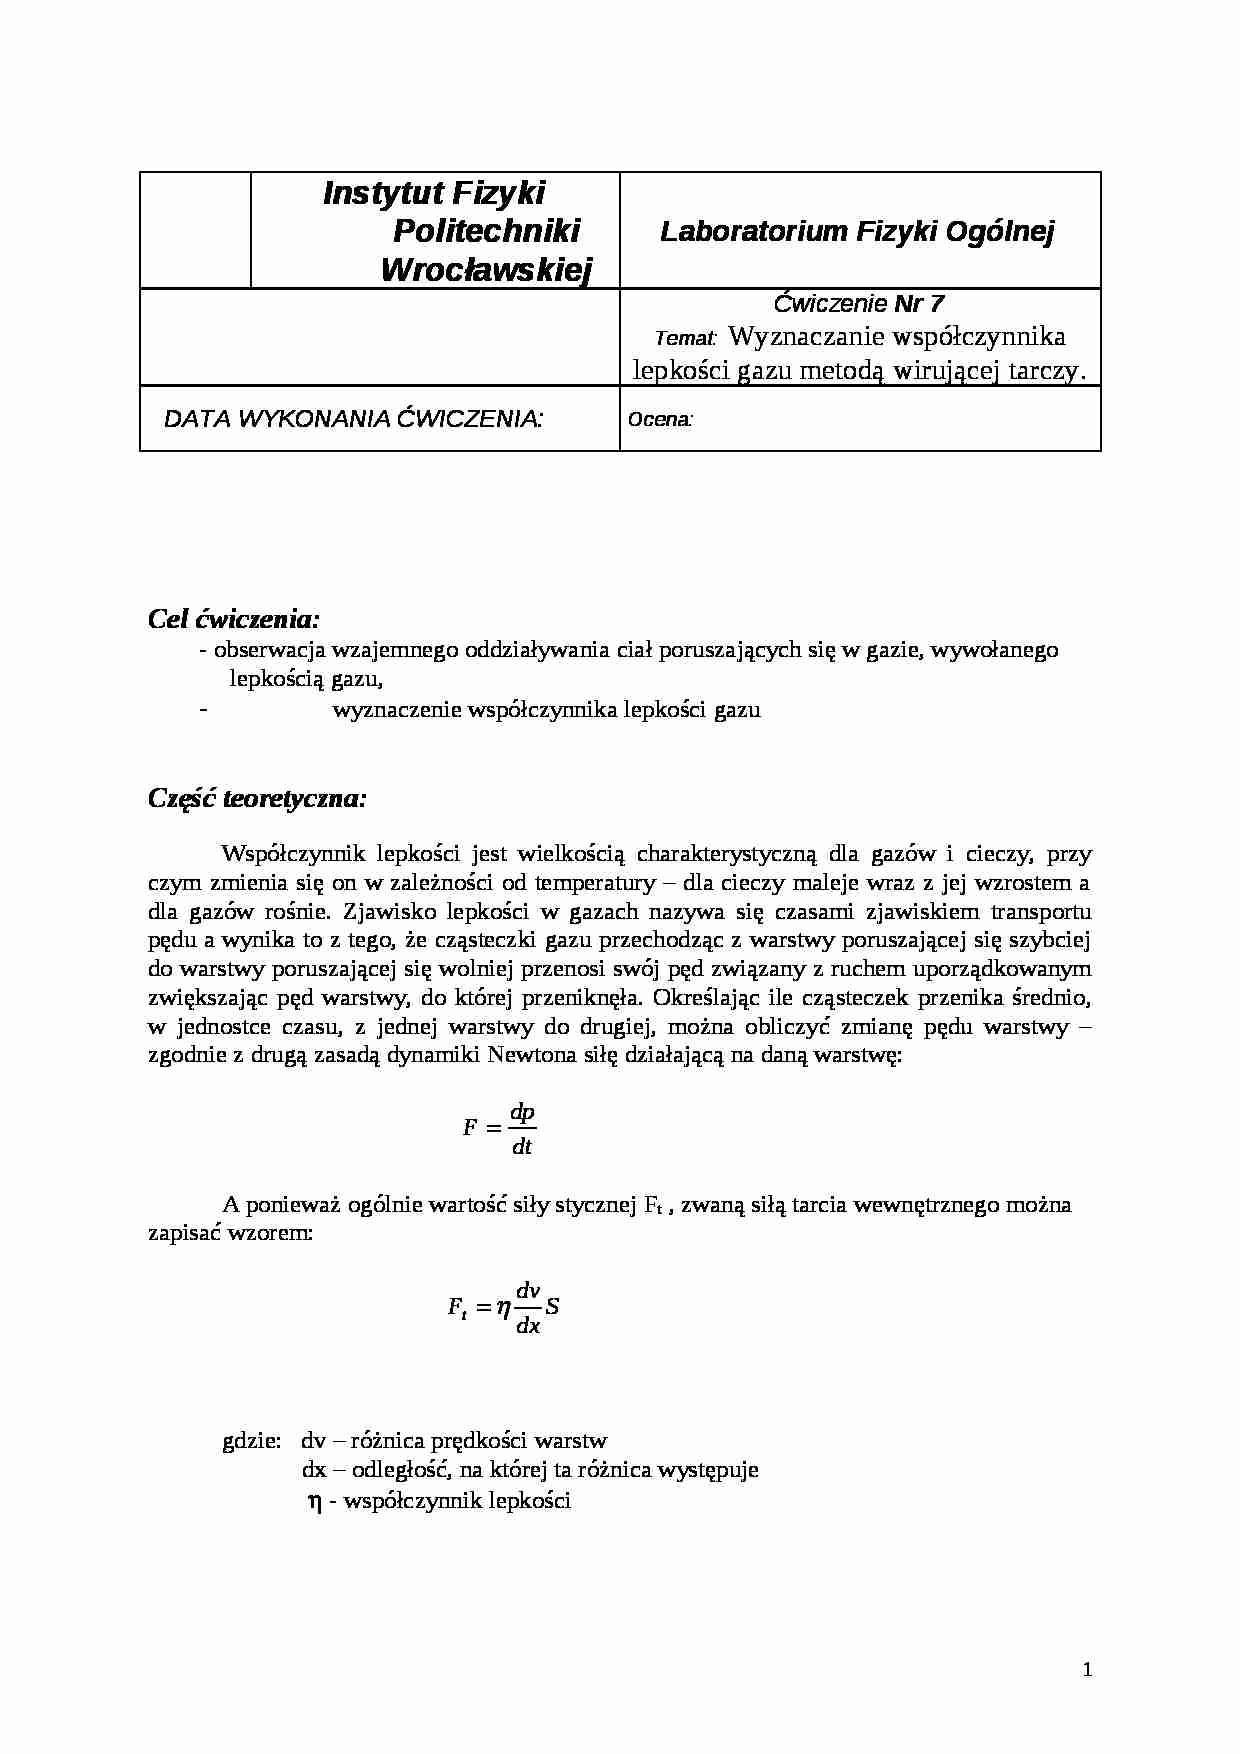 Wyznaczanie współczynnika lepkości gazu metodą wirującej tarczy-opracowanie - strona 1